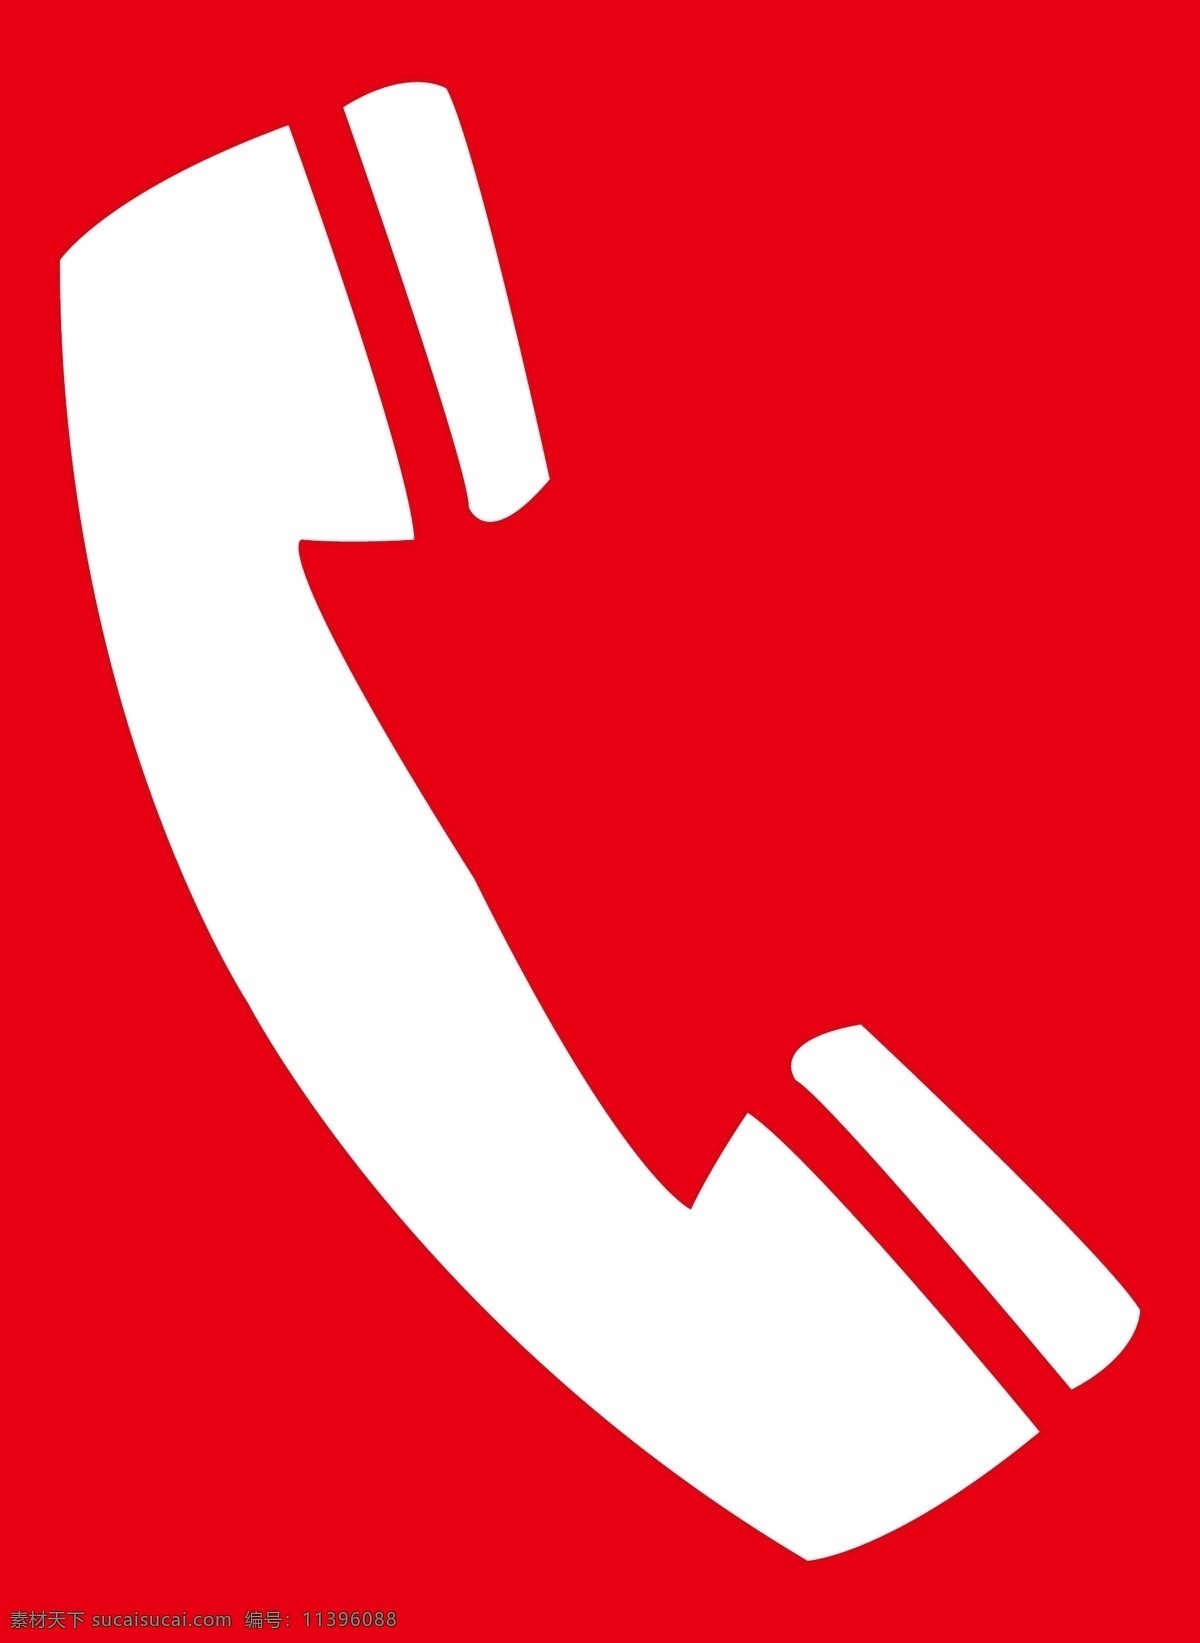 热线电话 客服 热线 服务热线 电话标识 手机标识 手机图标 电话图标